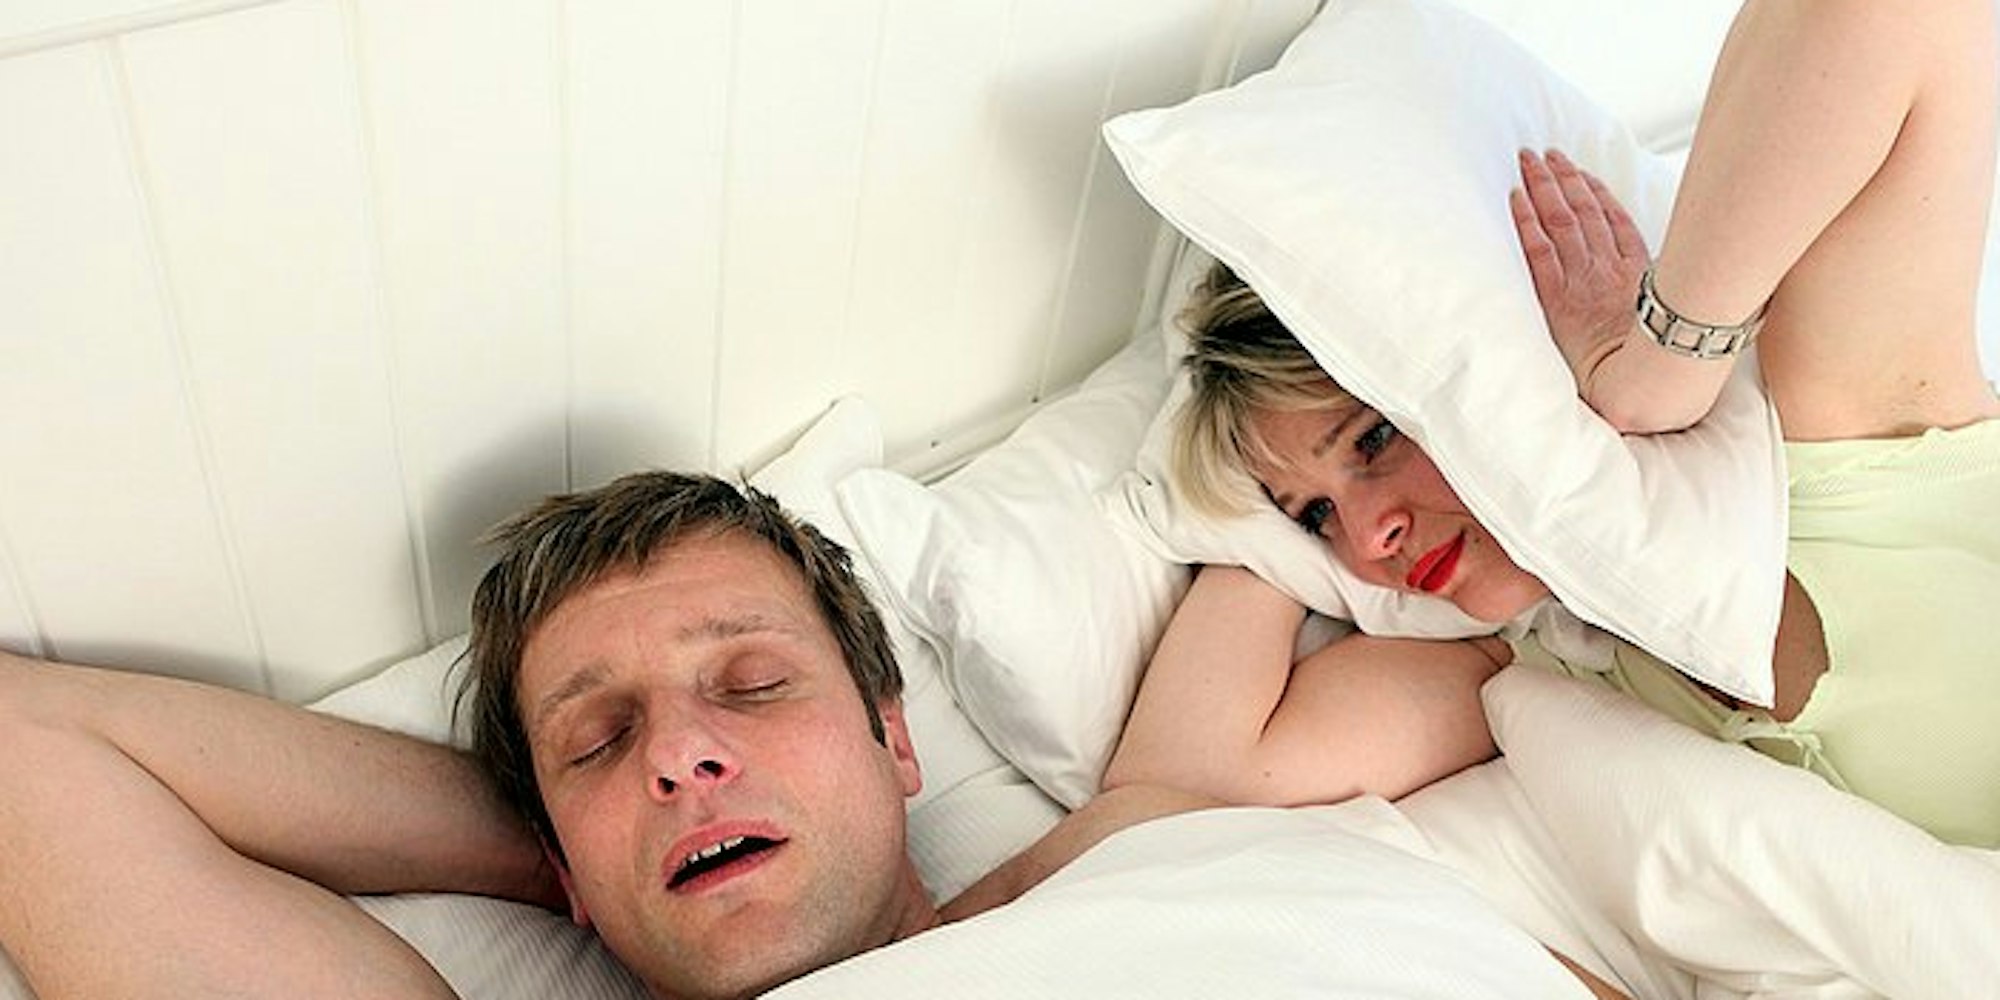 Schnarcht der Partner, ist an Schlaf oft nicht zu denken.